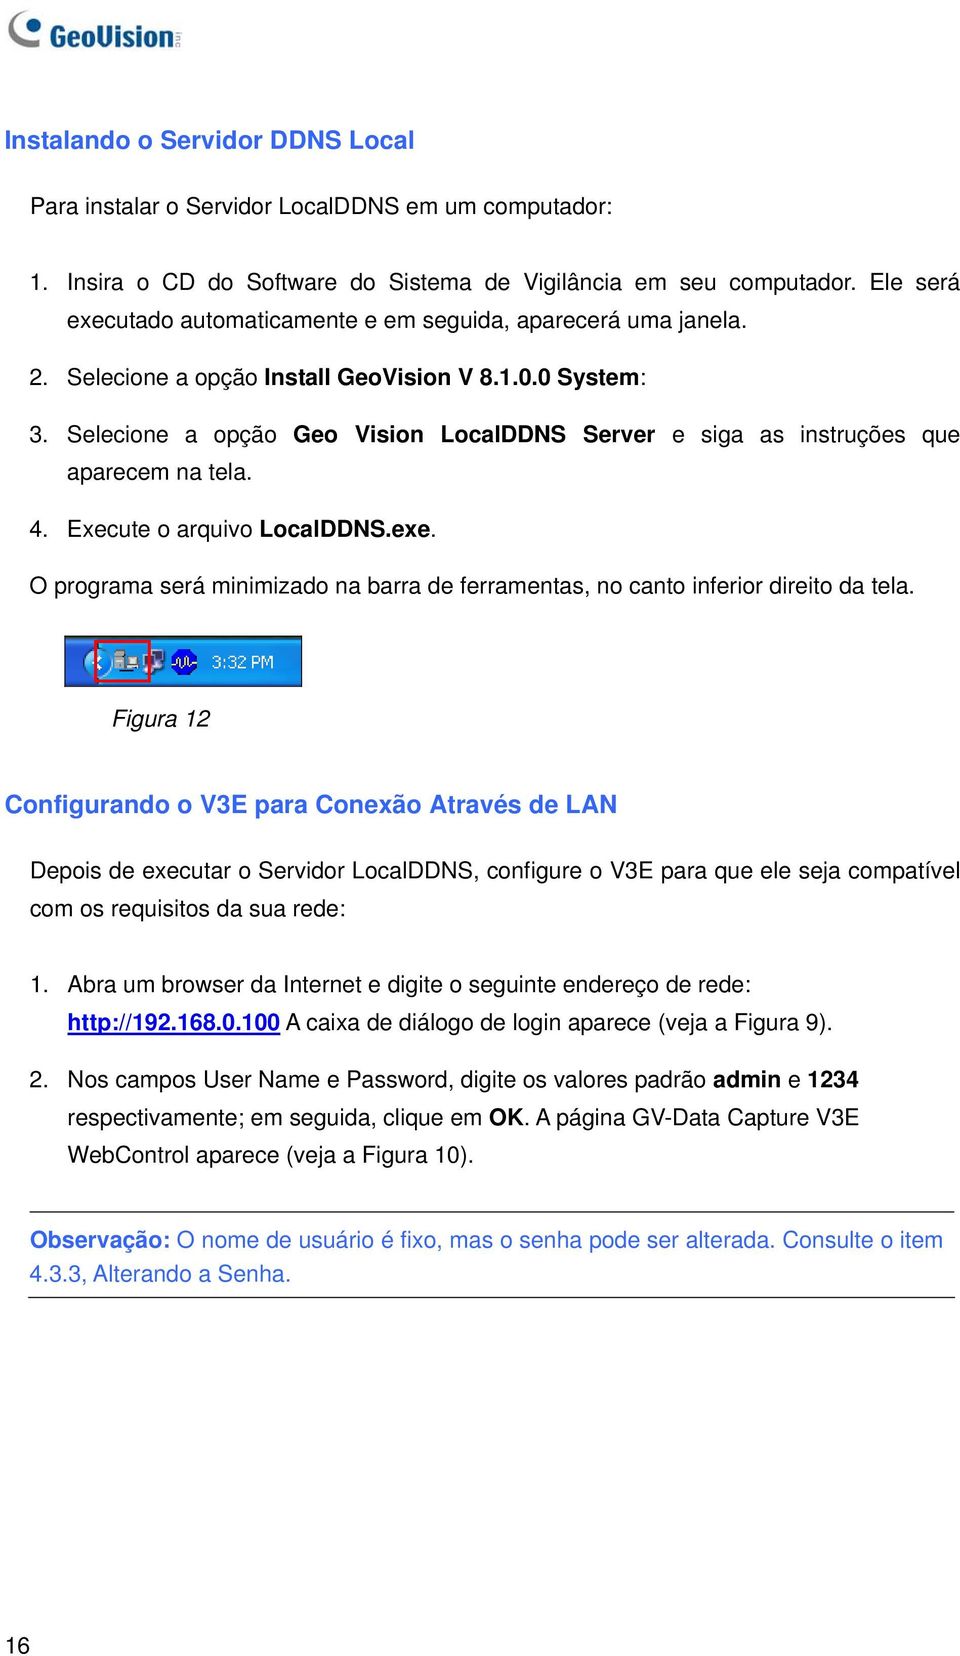 Selecione a opção Geo Vision LocalDDNS Server e siga as instruções que aparecem na tela. 4. Execute o arquivo LocalDDNS.exe.